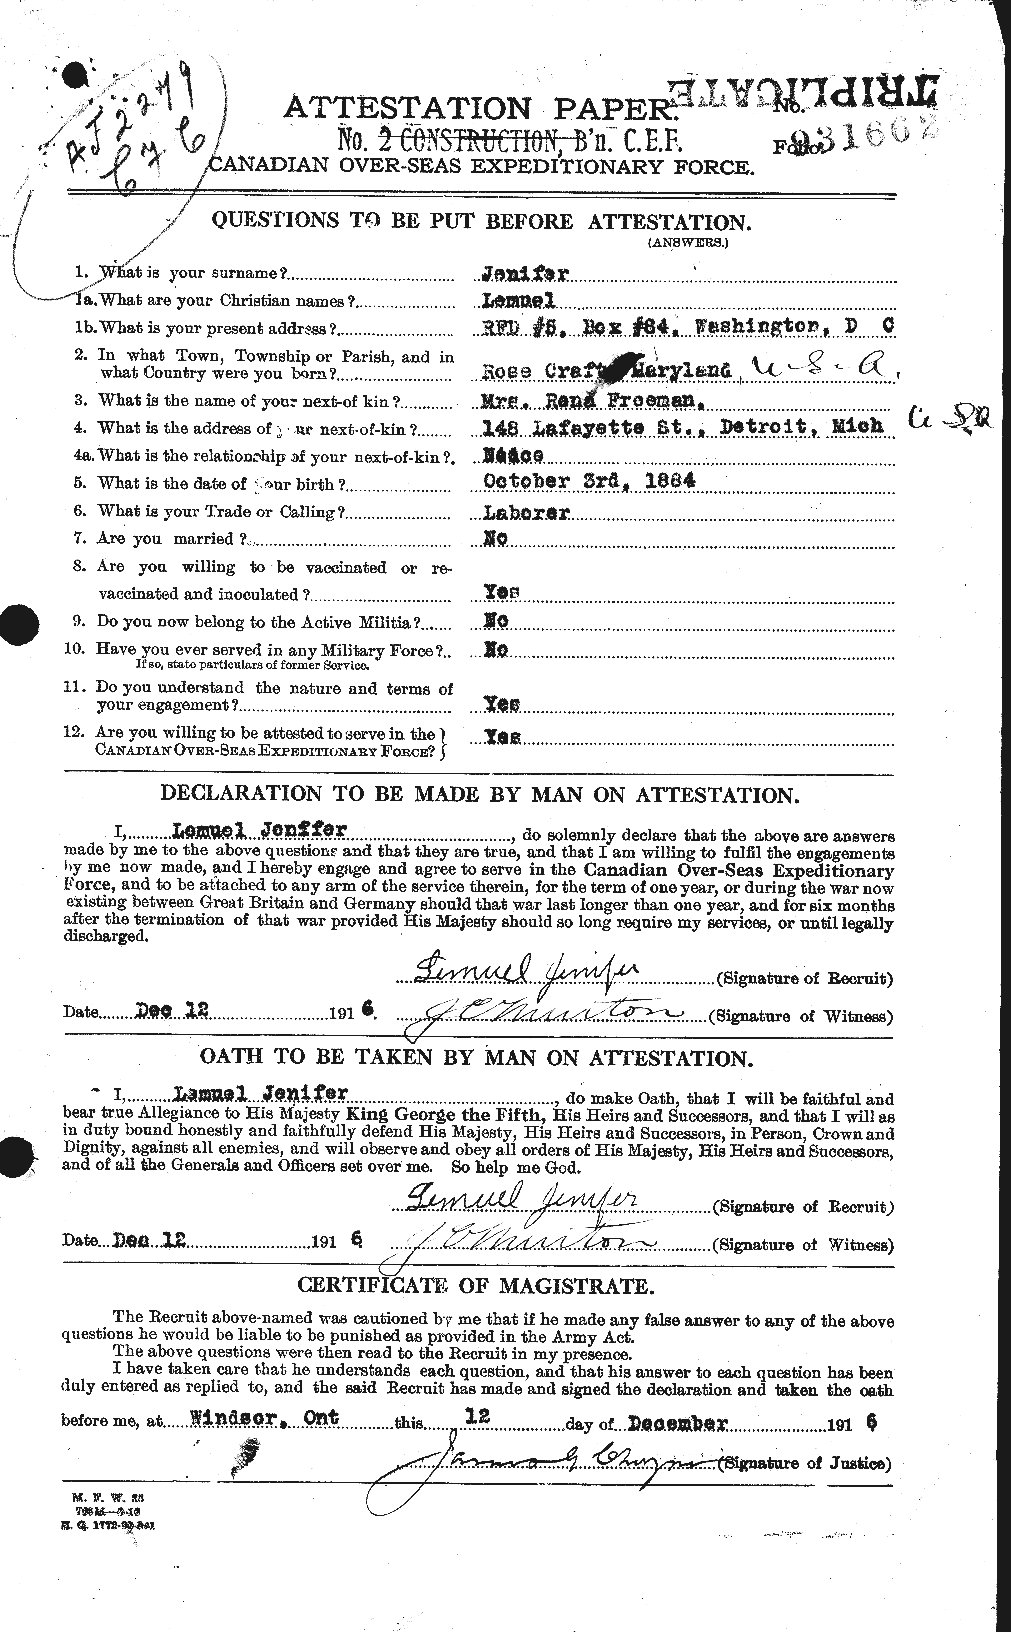 Dossiers du Personnel de la Première Guerre mondiale - CEC 416529a